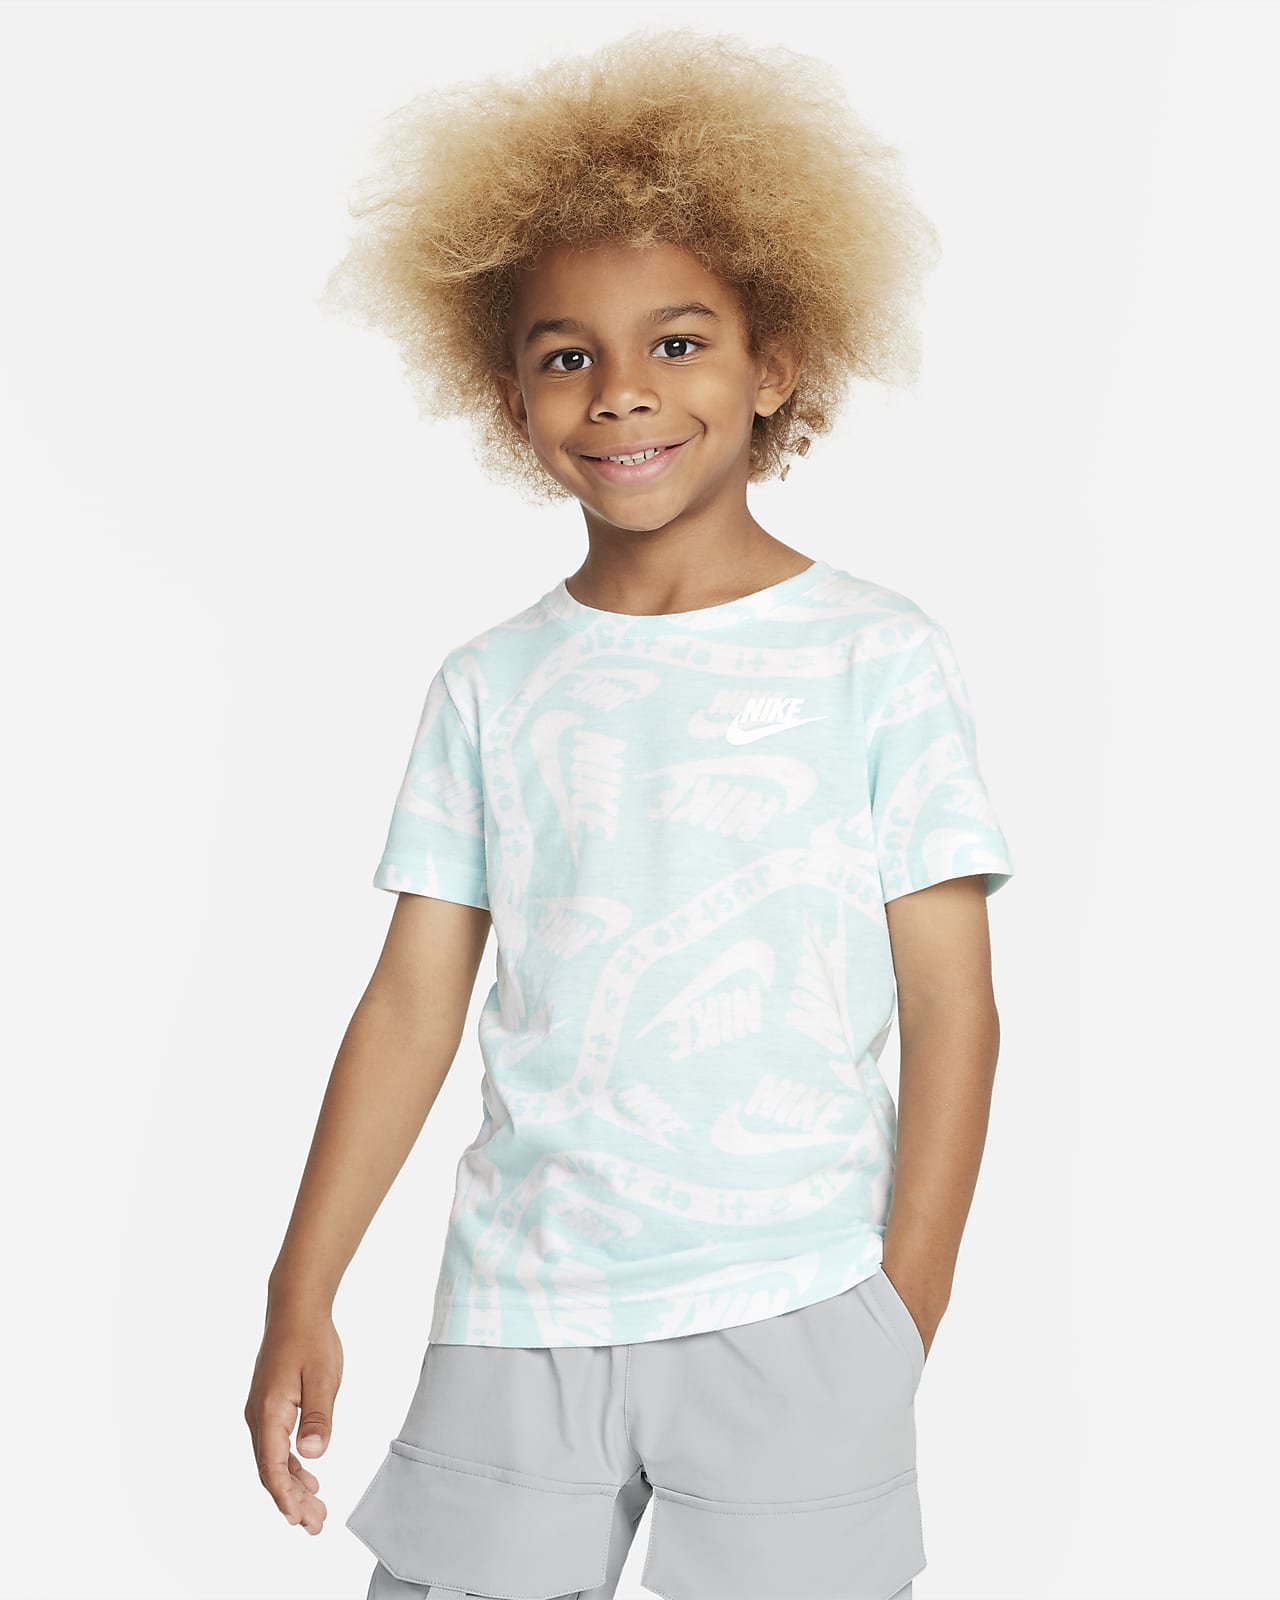 Nike Brandmark Basic Tee Little Kids T-Shirt